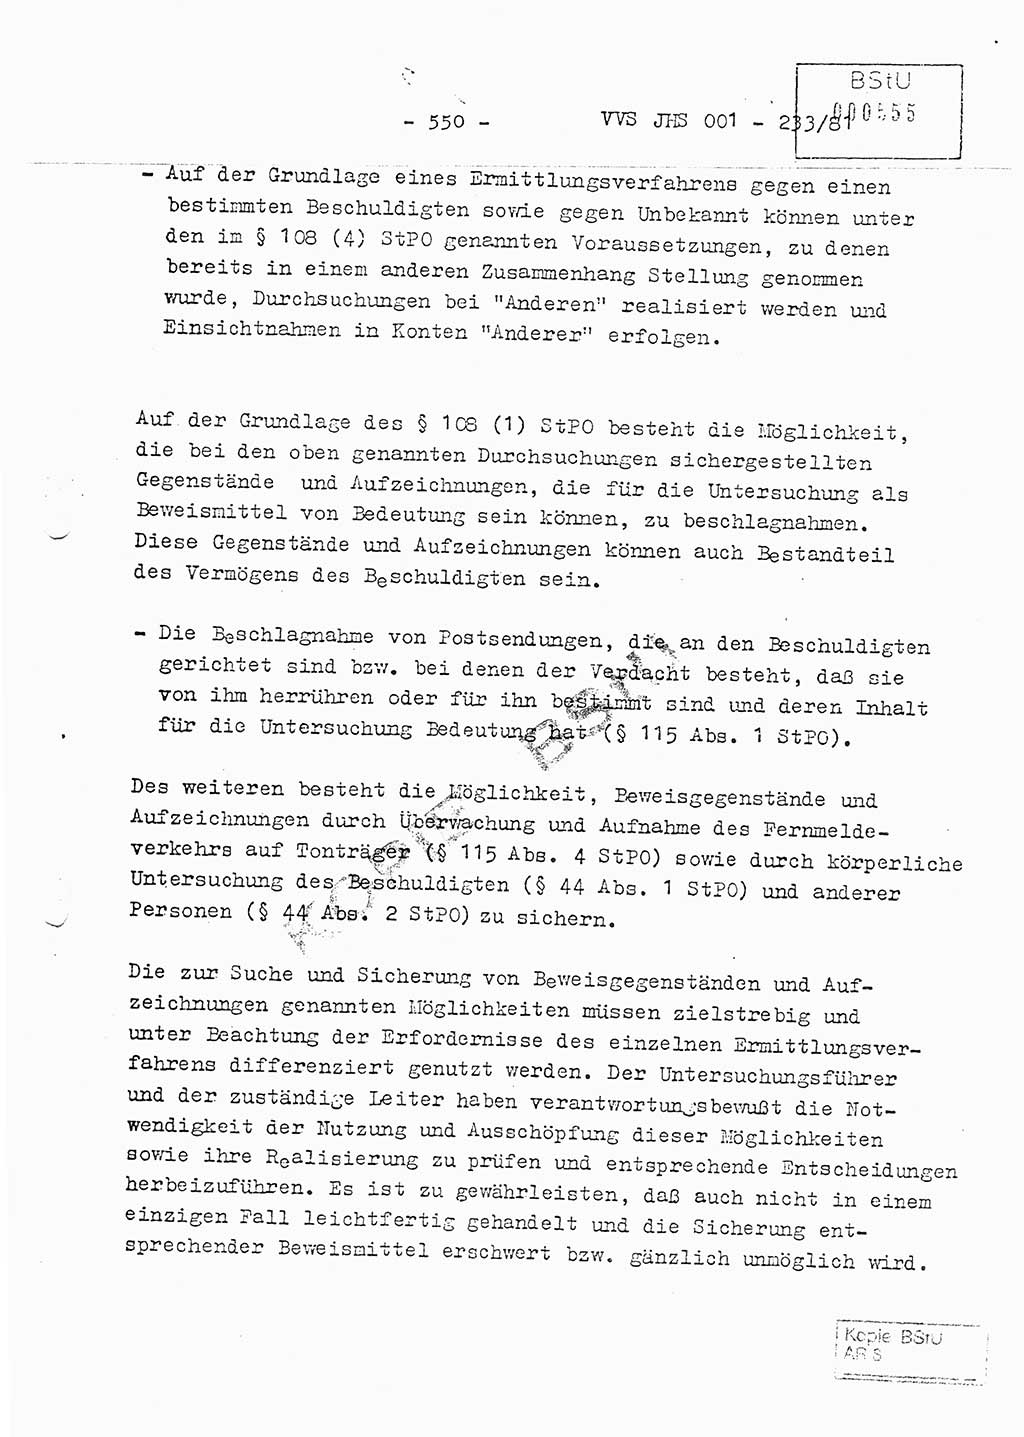 Dissertation Oberstleutnant Horst Zank (JHS), Oberstleutnant Dr. Karl-Heinz Knoblauch (JHS), Oberstleutnant Gustav-Adolf Kowalewski (HA Ⅸ), Oberstleutnant Wolfgang Plötner (HA Ⅸ), Ministerium für Staatssicherheit (MfS) [Deutsche Demokratische Republik (DDR)], Juristische Hochschule (JHS), Vertrauliche Verschlußsache (VVS) o001-233/81, Potsdam 1981, Blatt 550 (Diss. MfS DDR JHS VVS o001-233/81 1981, Bl. 550)